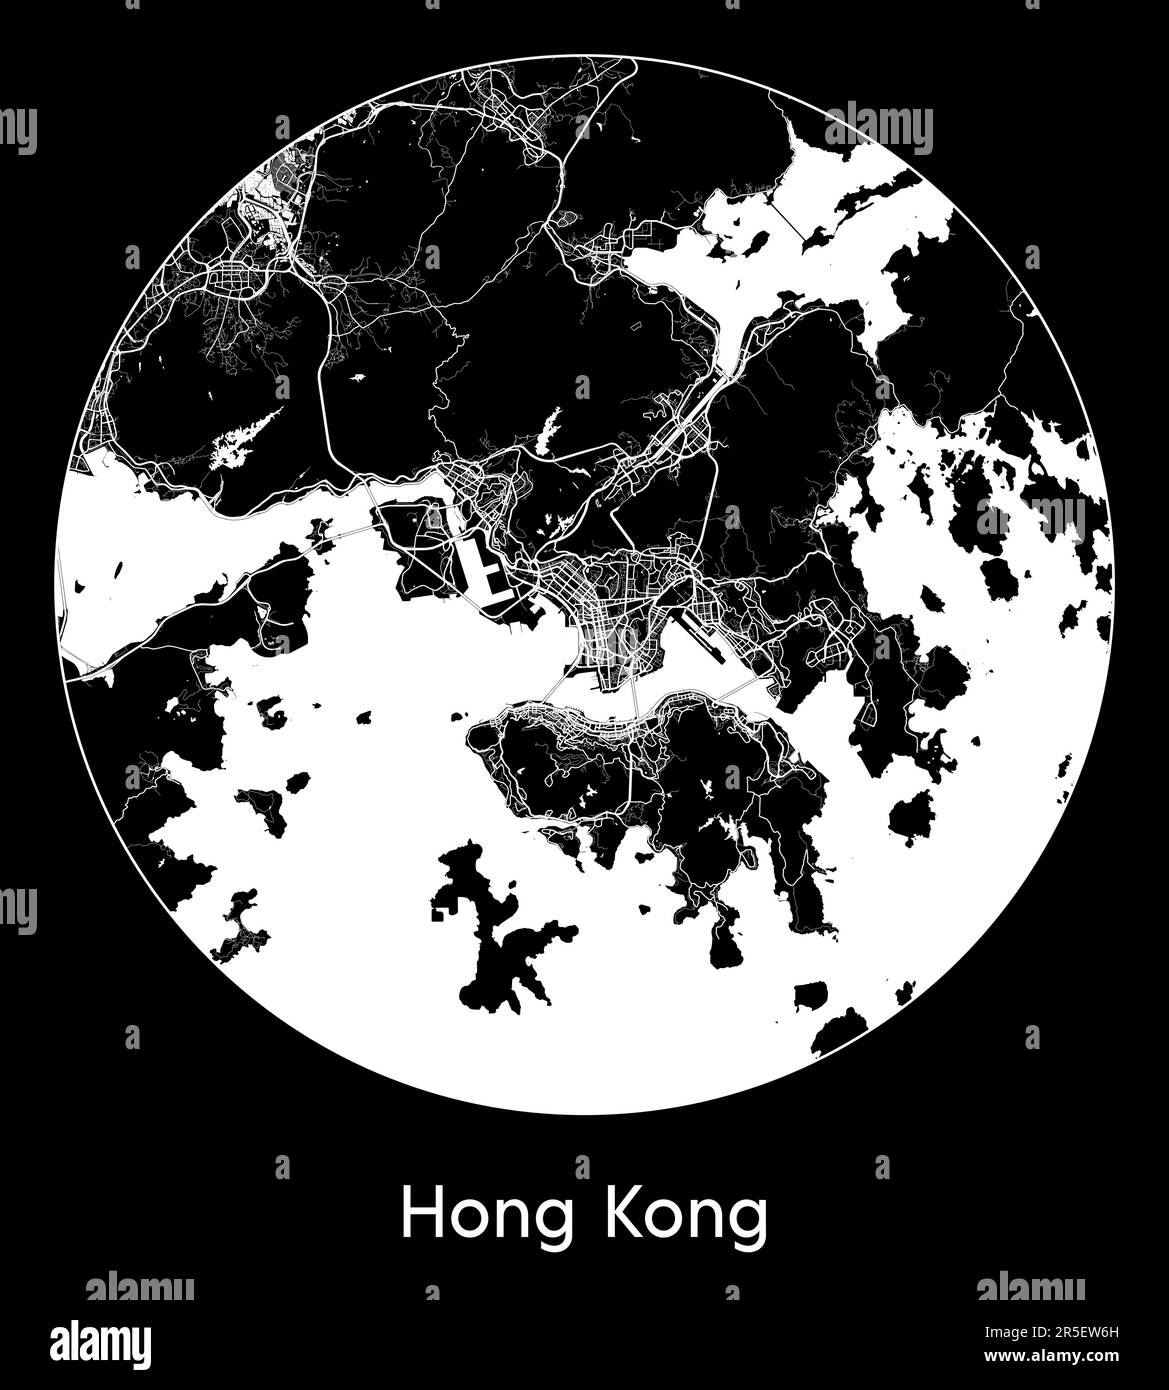 City Map Hong Kong China Asia vector illustration Stock Vector